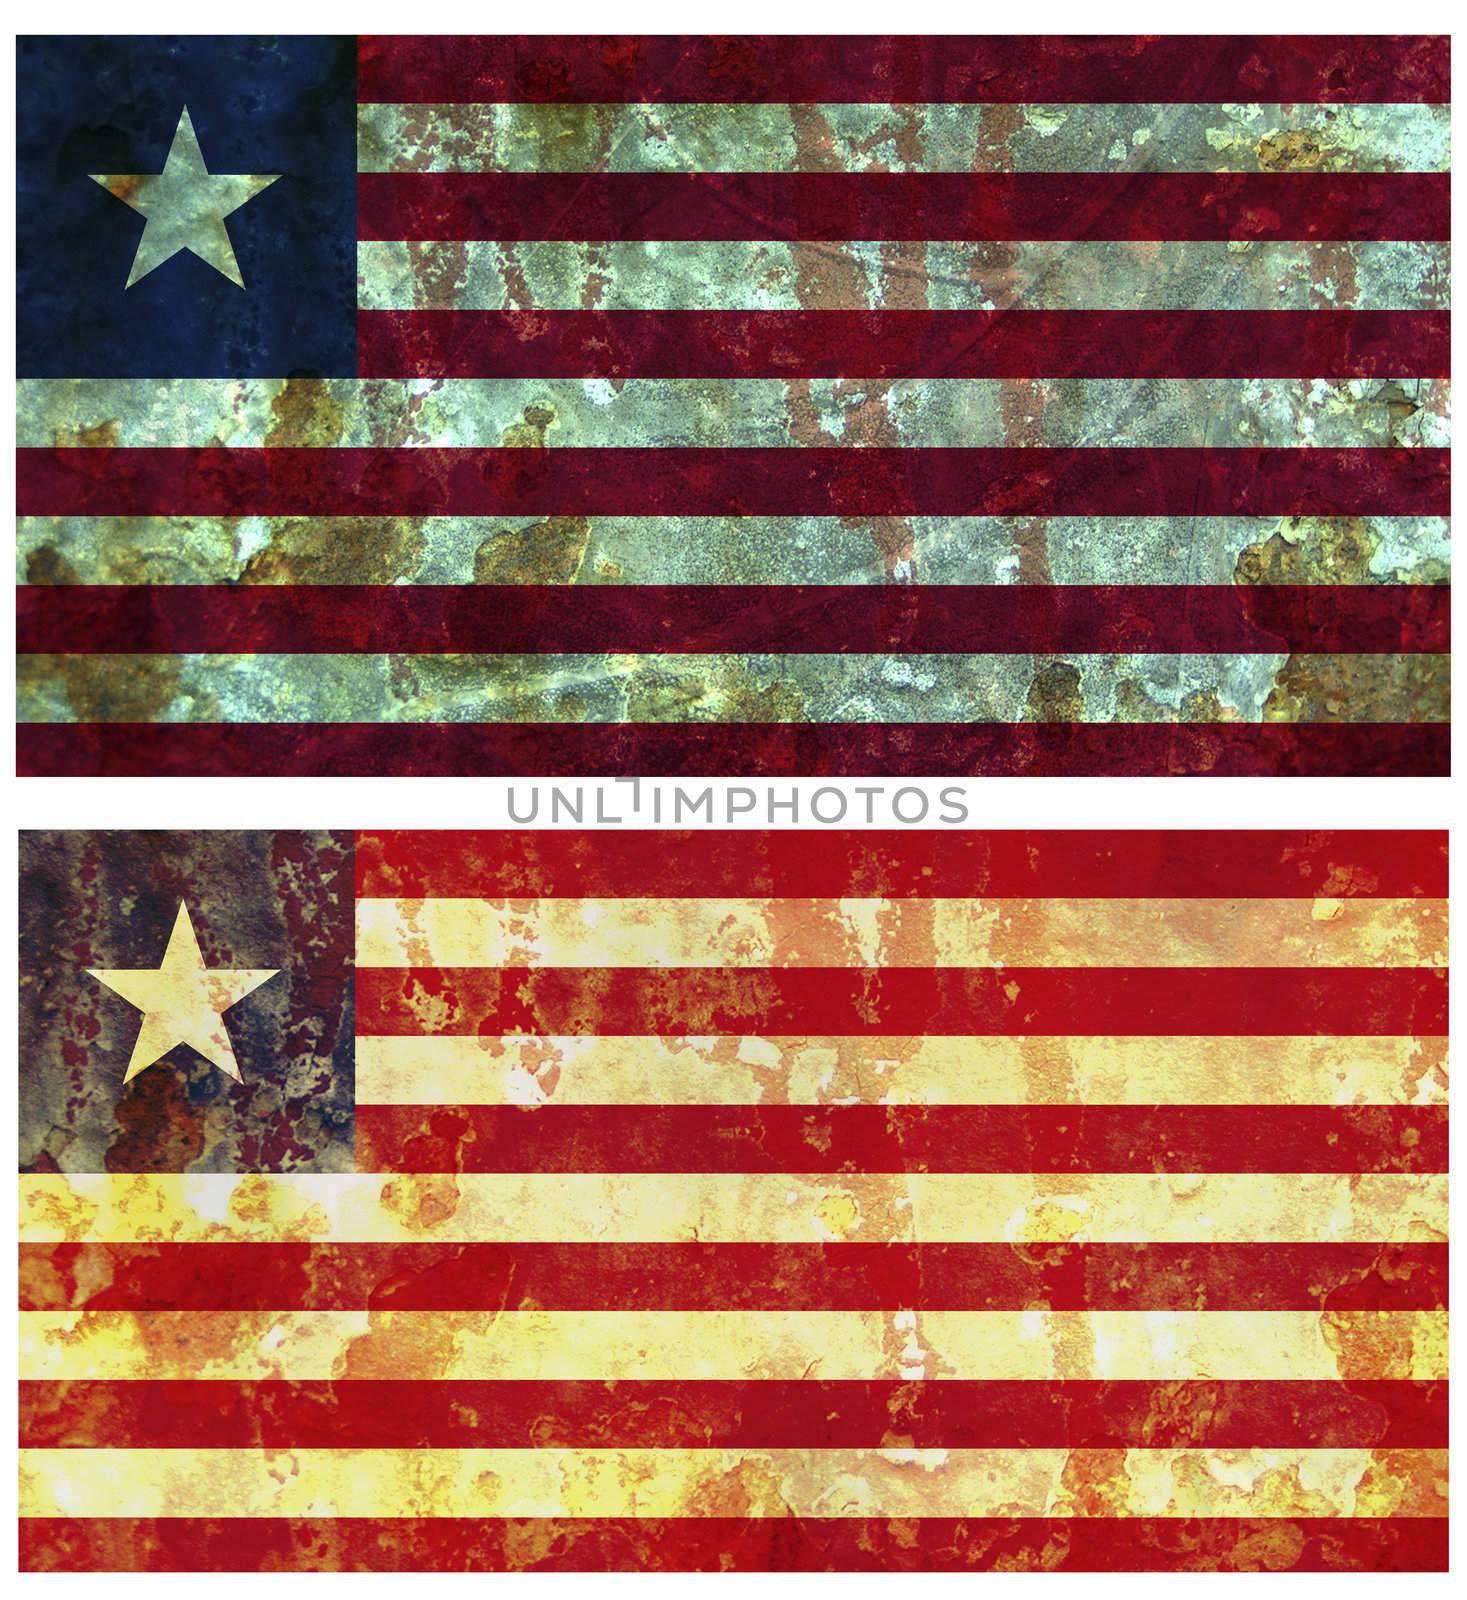 flag of liberia